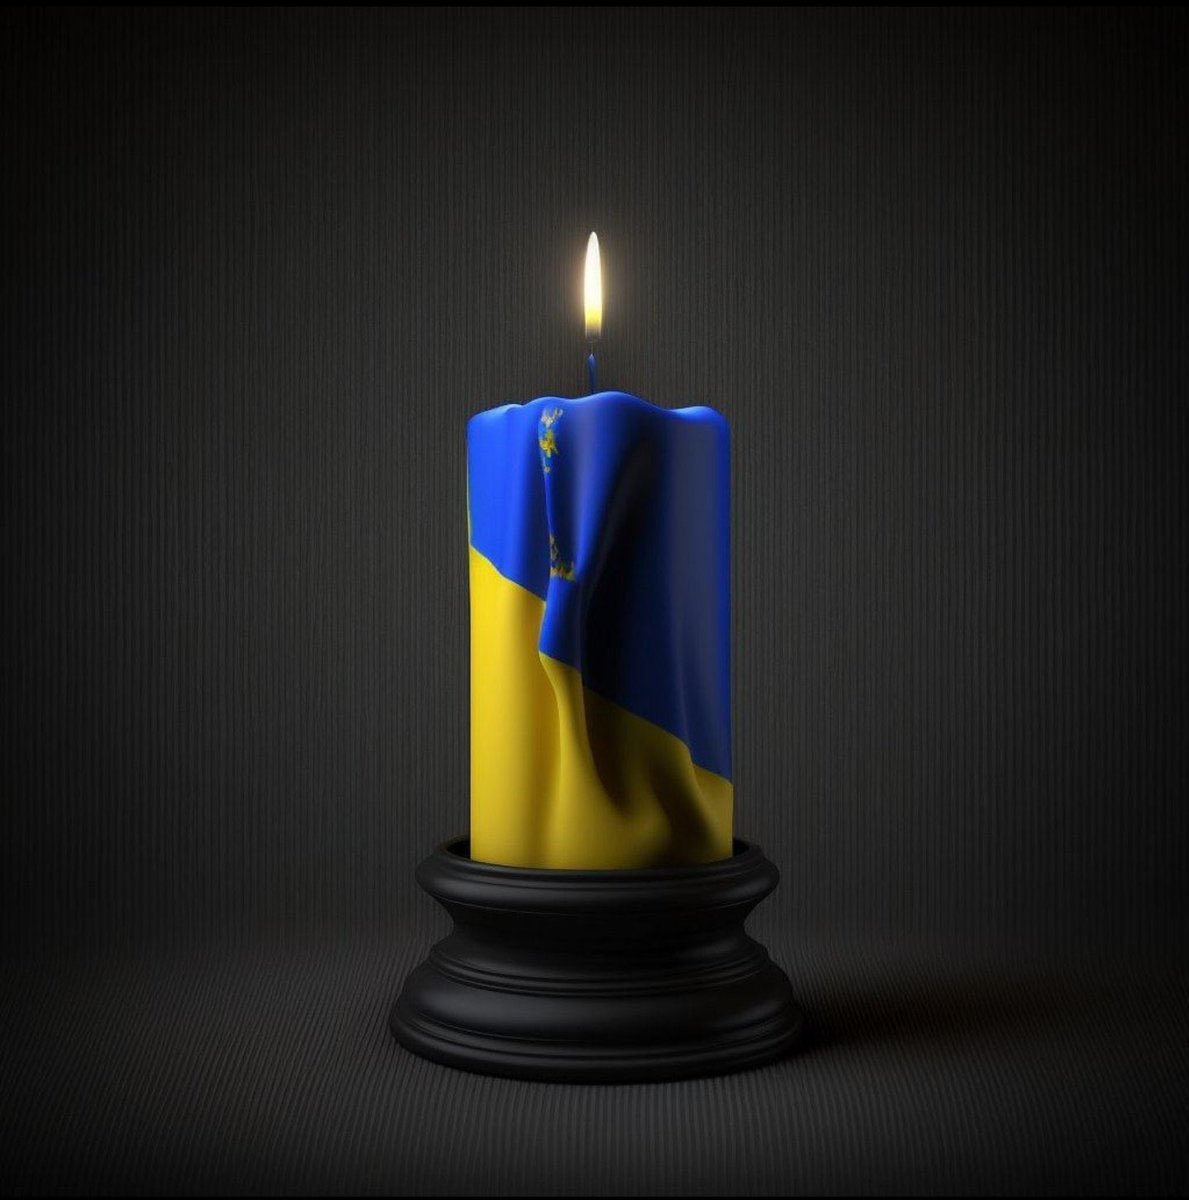 Rest In Peace. #SlavaUkrainii #HeroyamSlava  🇺🇦🌻